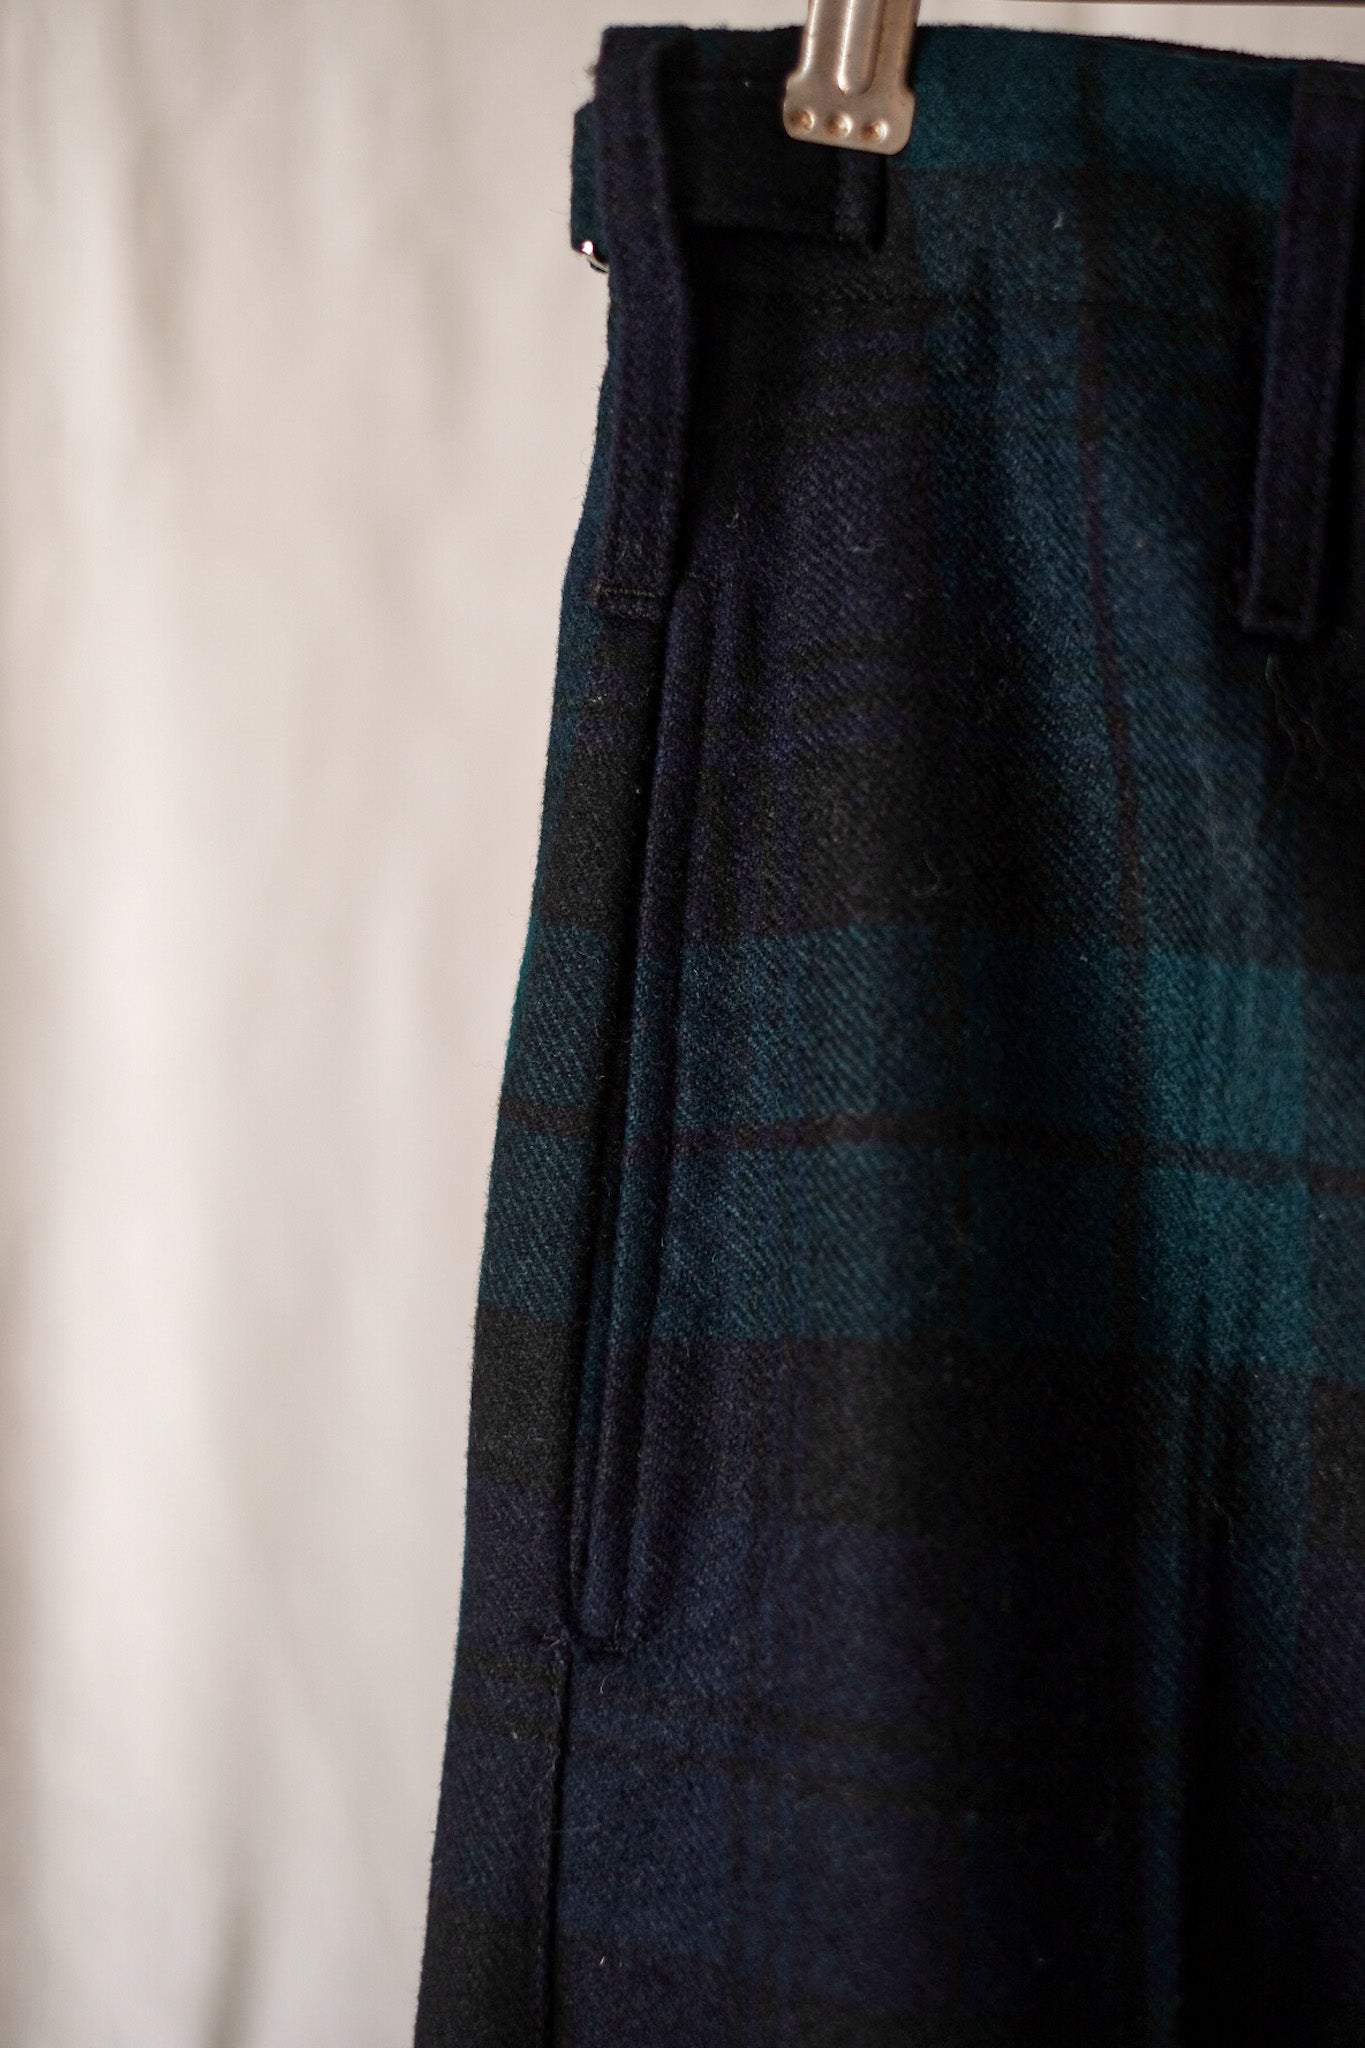 [〜80年代]蘇格蘭軍事儀式羊毛長褲